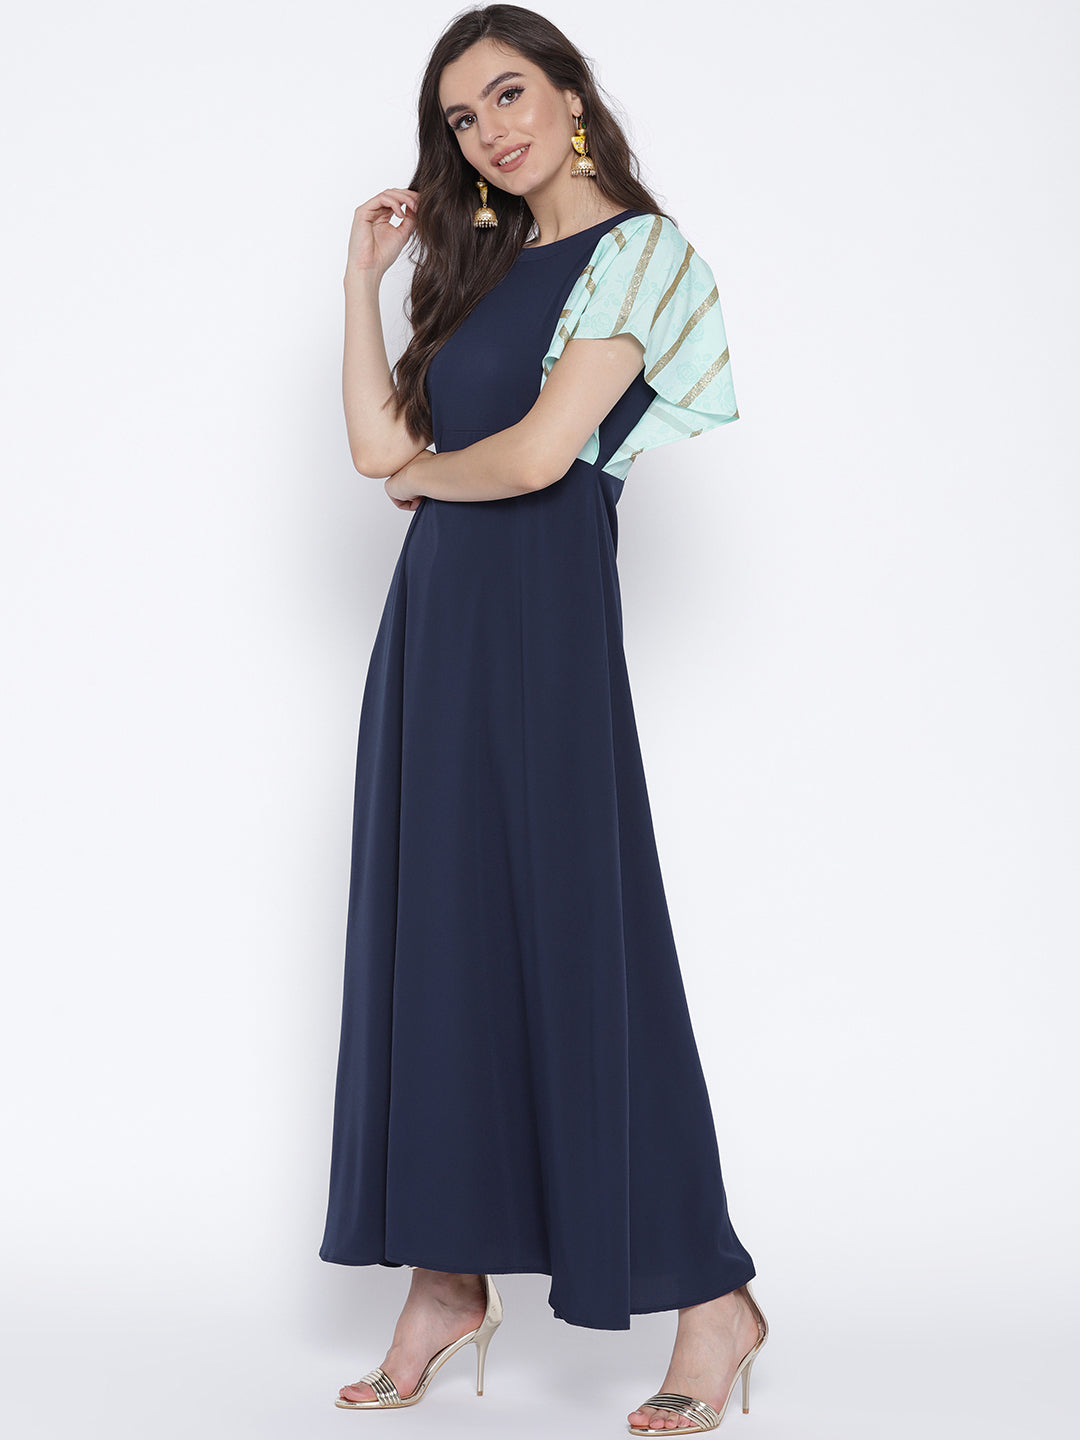 Women's Navy Blue & Light Blue Flared Sleeve Only Kurta Dress - Ahalyaa